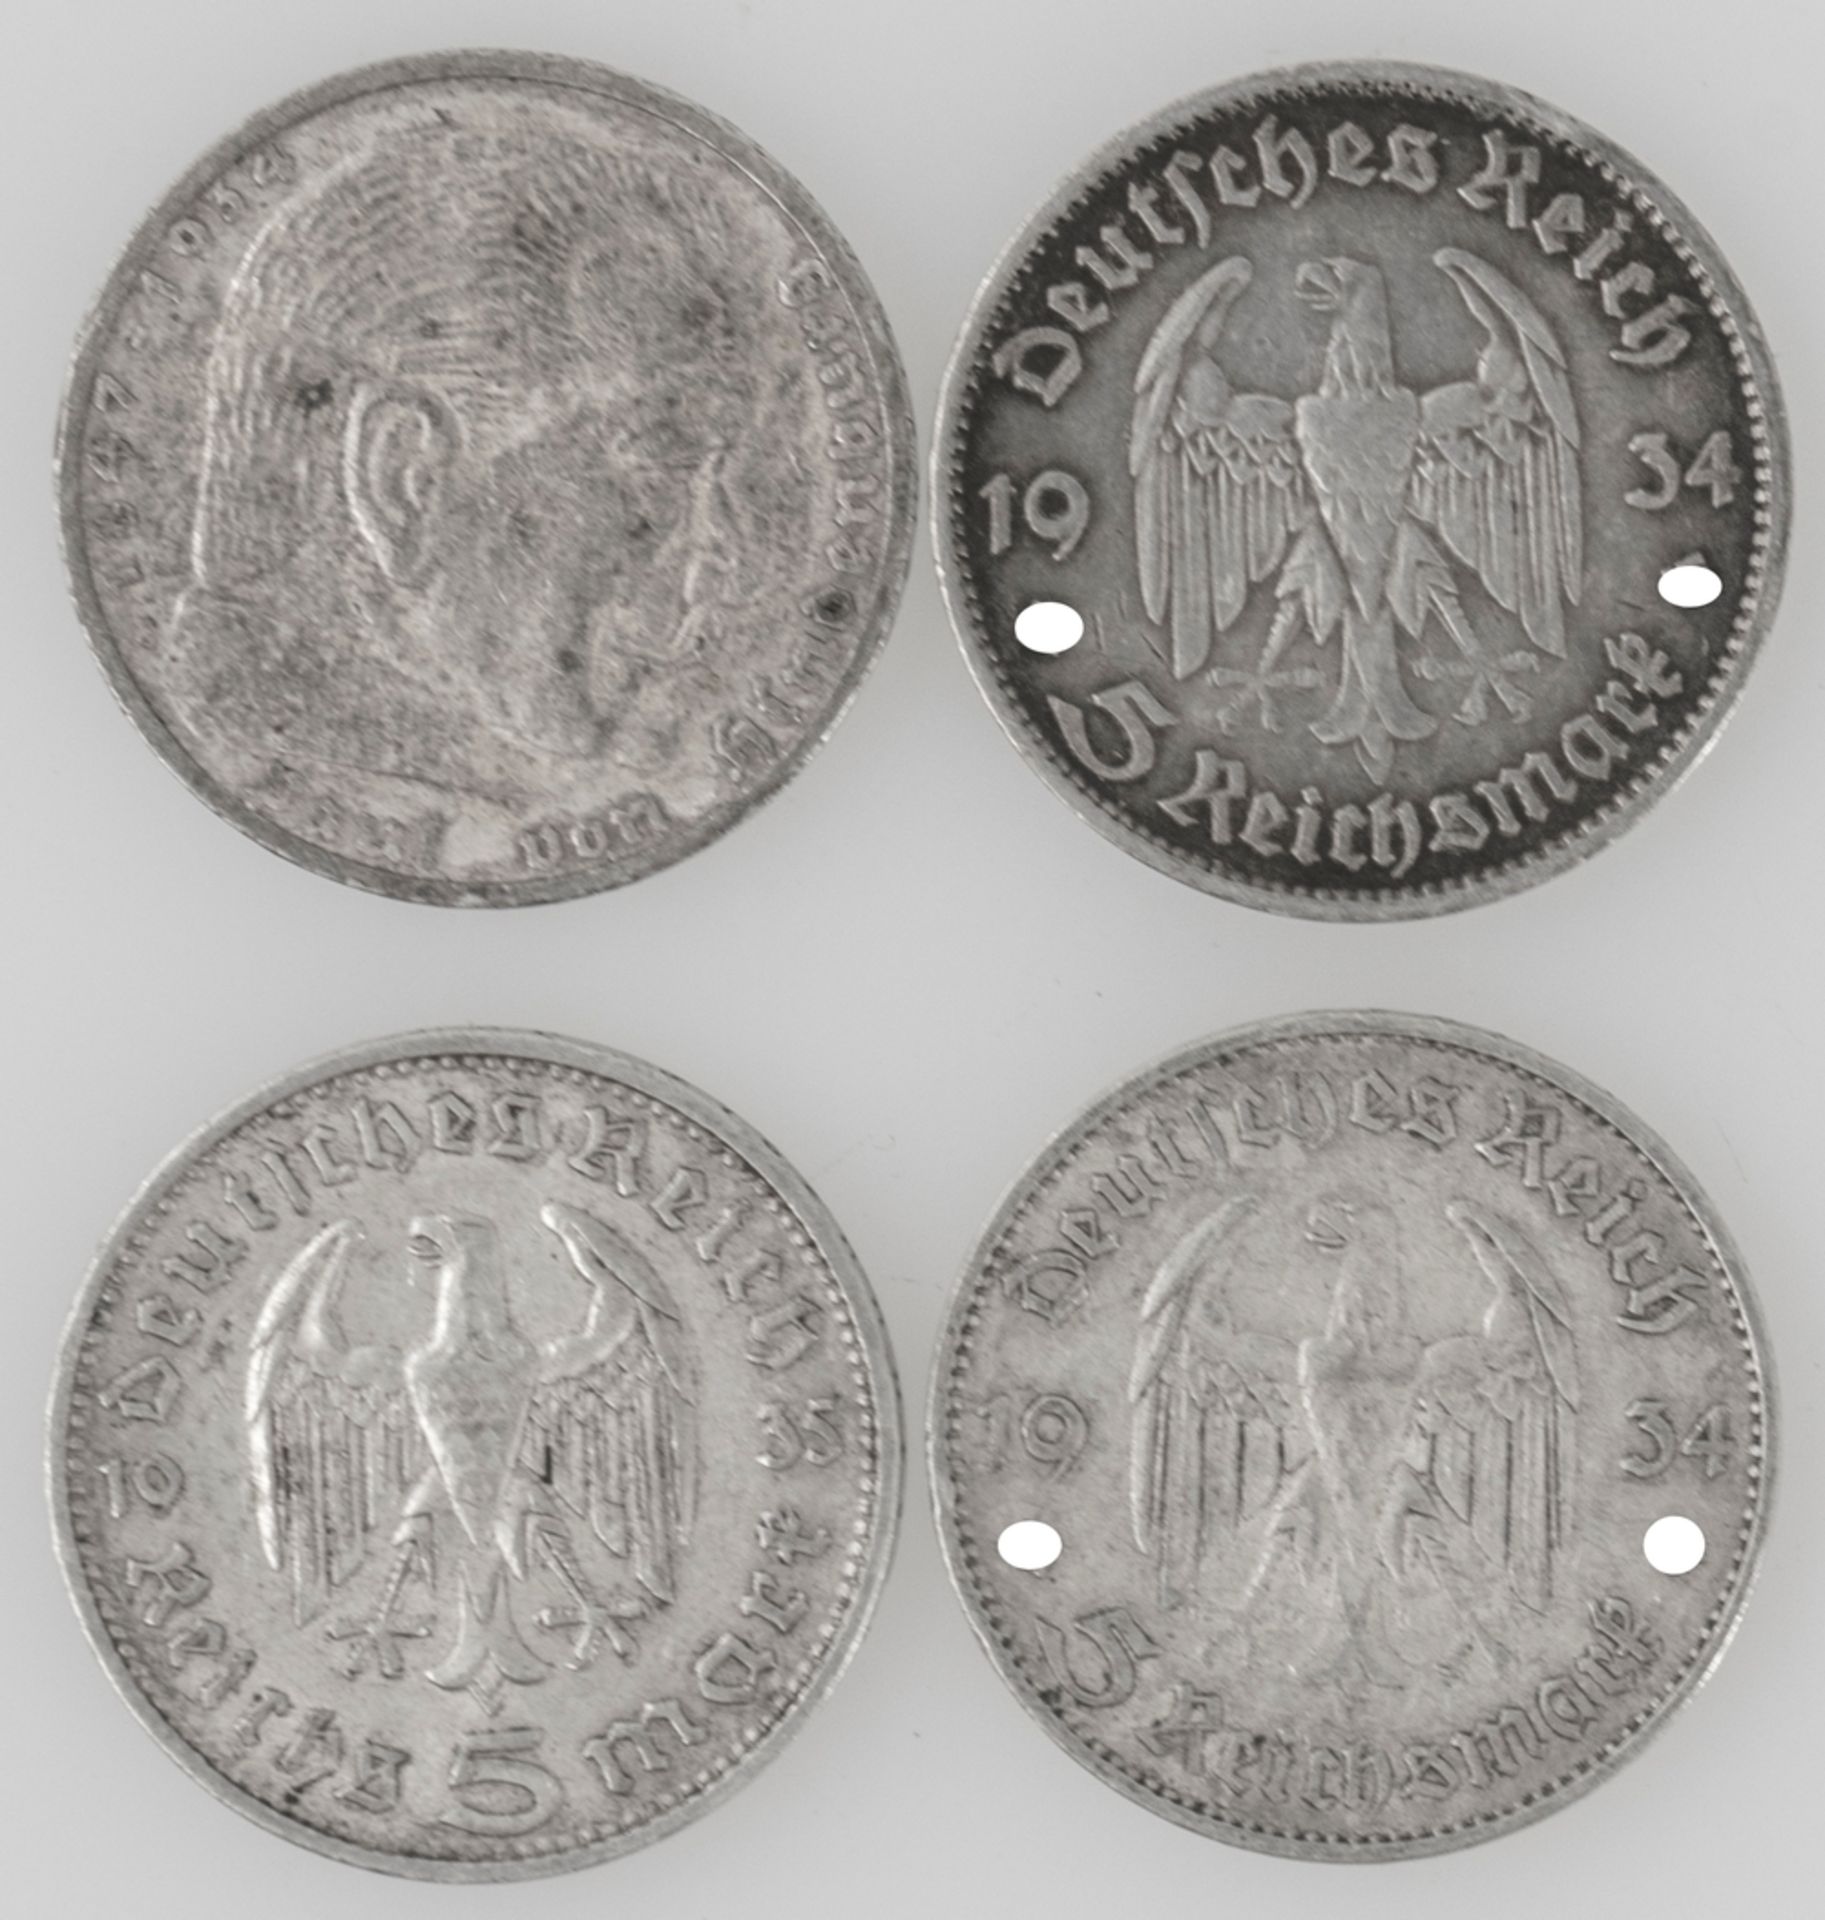 Drittes Reich 1934/36, Lot 5 Reichsmark - Silbermünzen. Erhaltung: ss. - Image 2 of 2